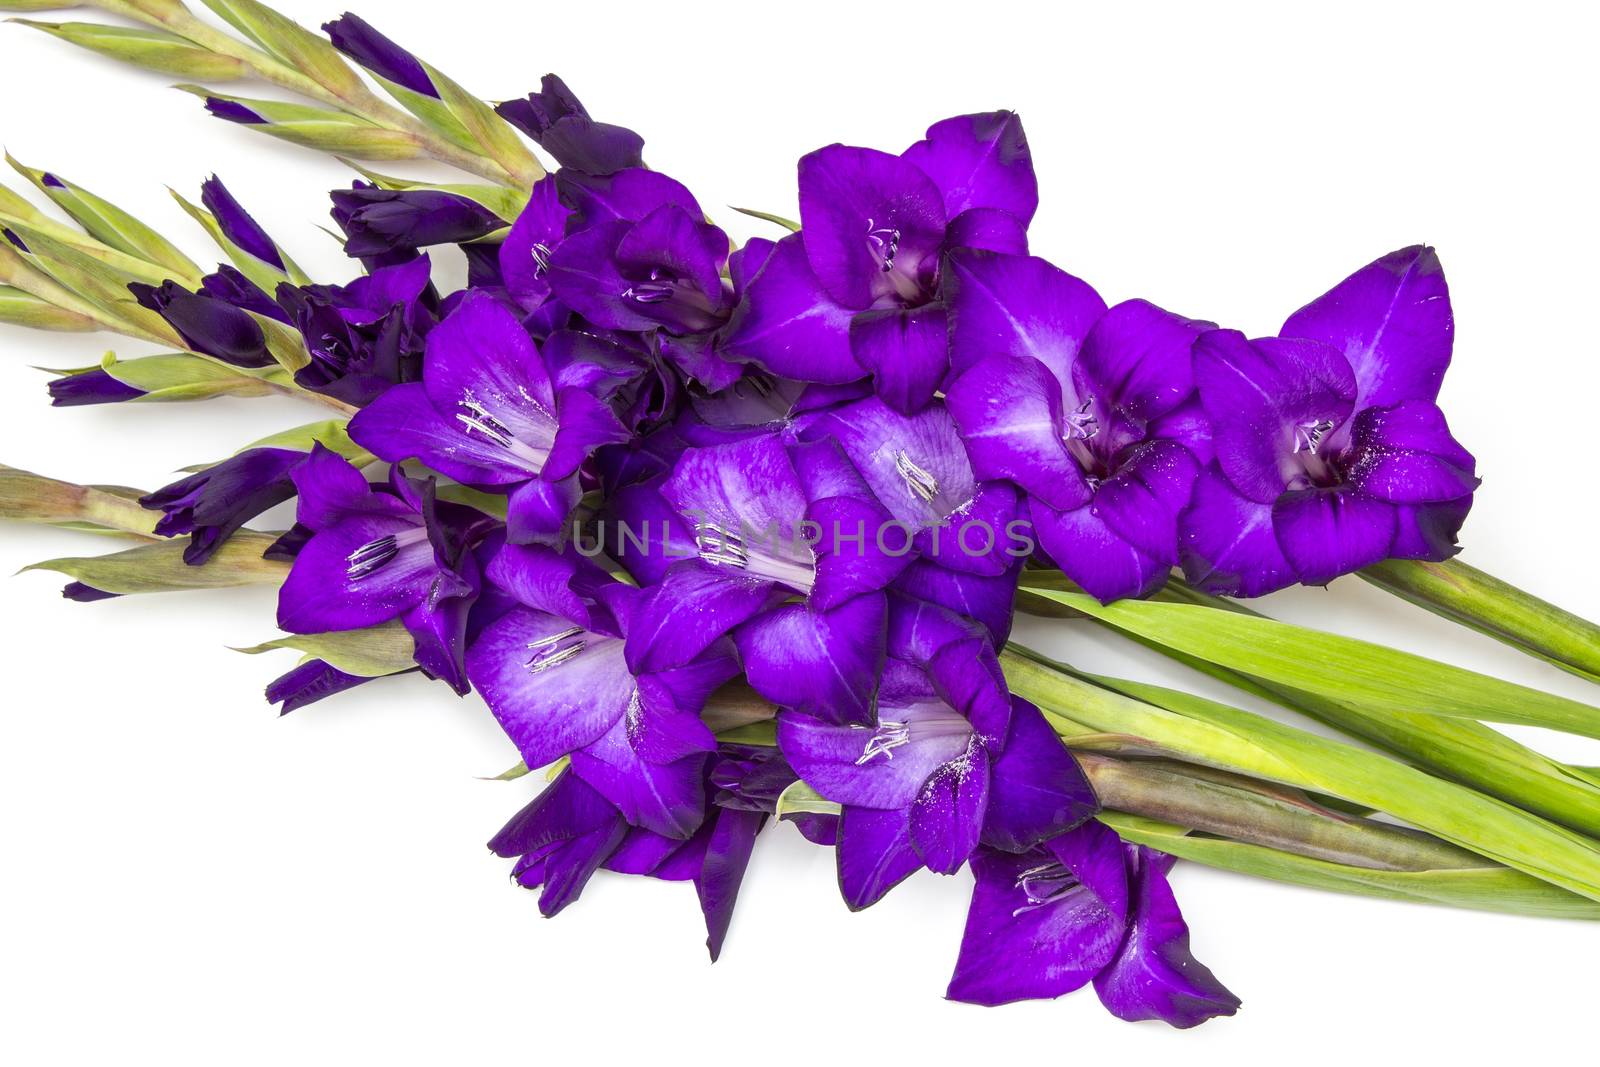 purple gladiolus flowers by miradrozdowski